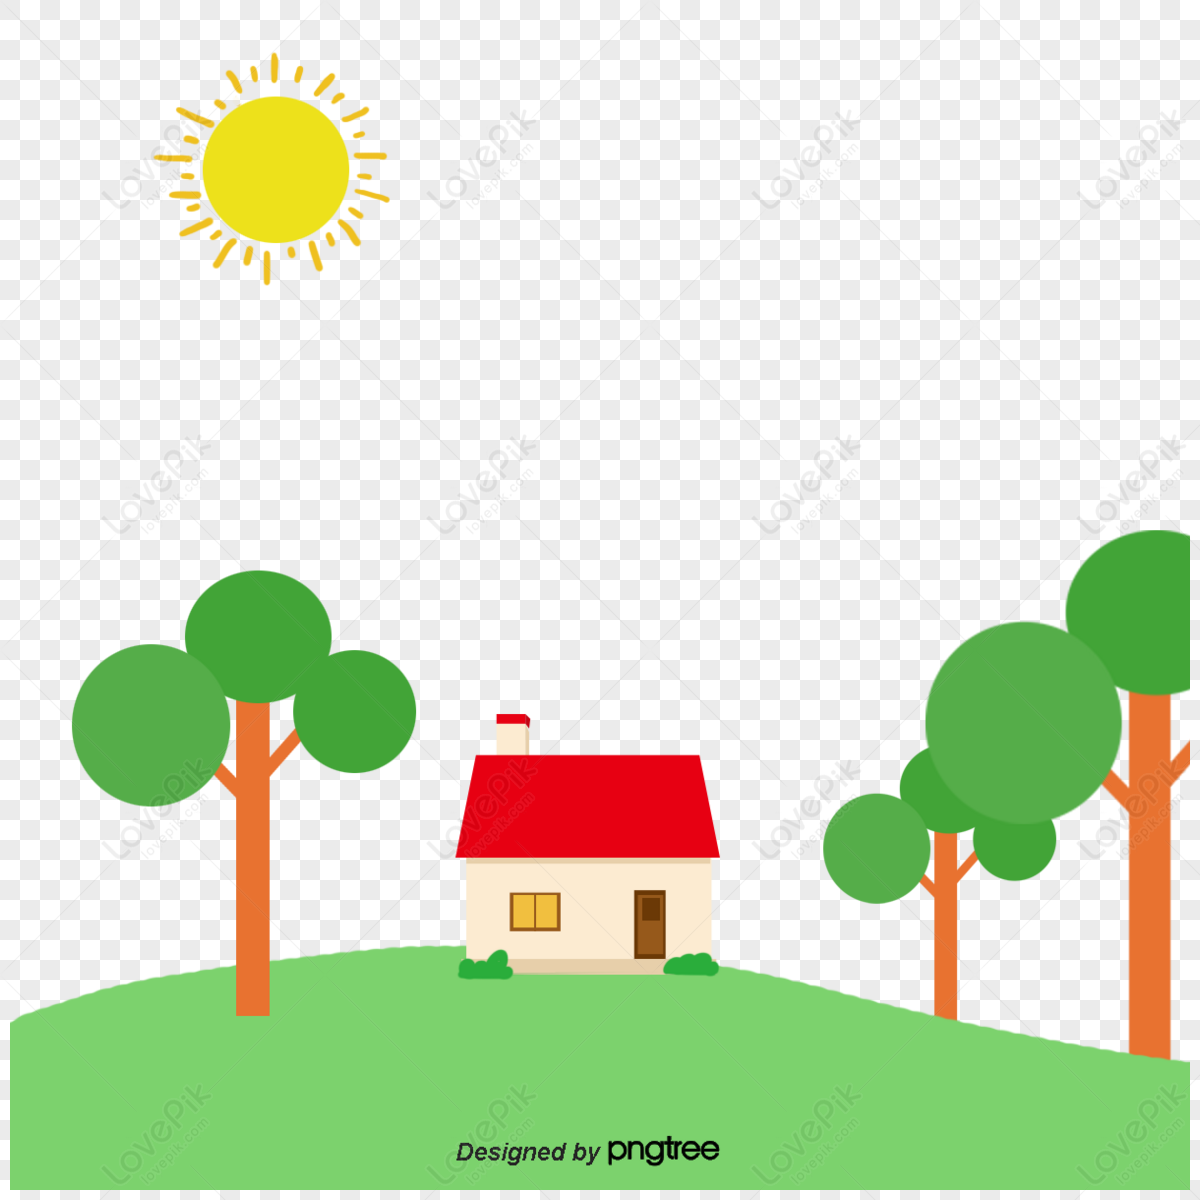 Red House Logo Design Real Estate Stock Vector (Royalty Free) 269289809 |  Shutterstock | House logo design, Logo design, Home logo